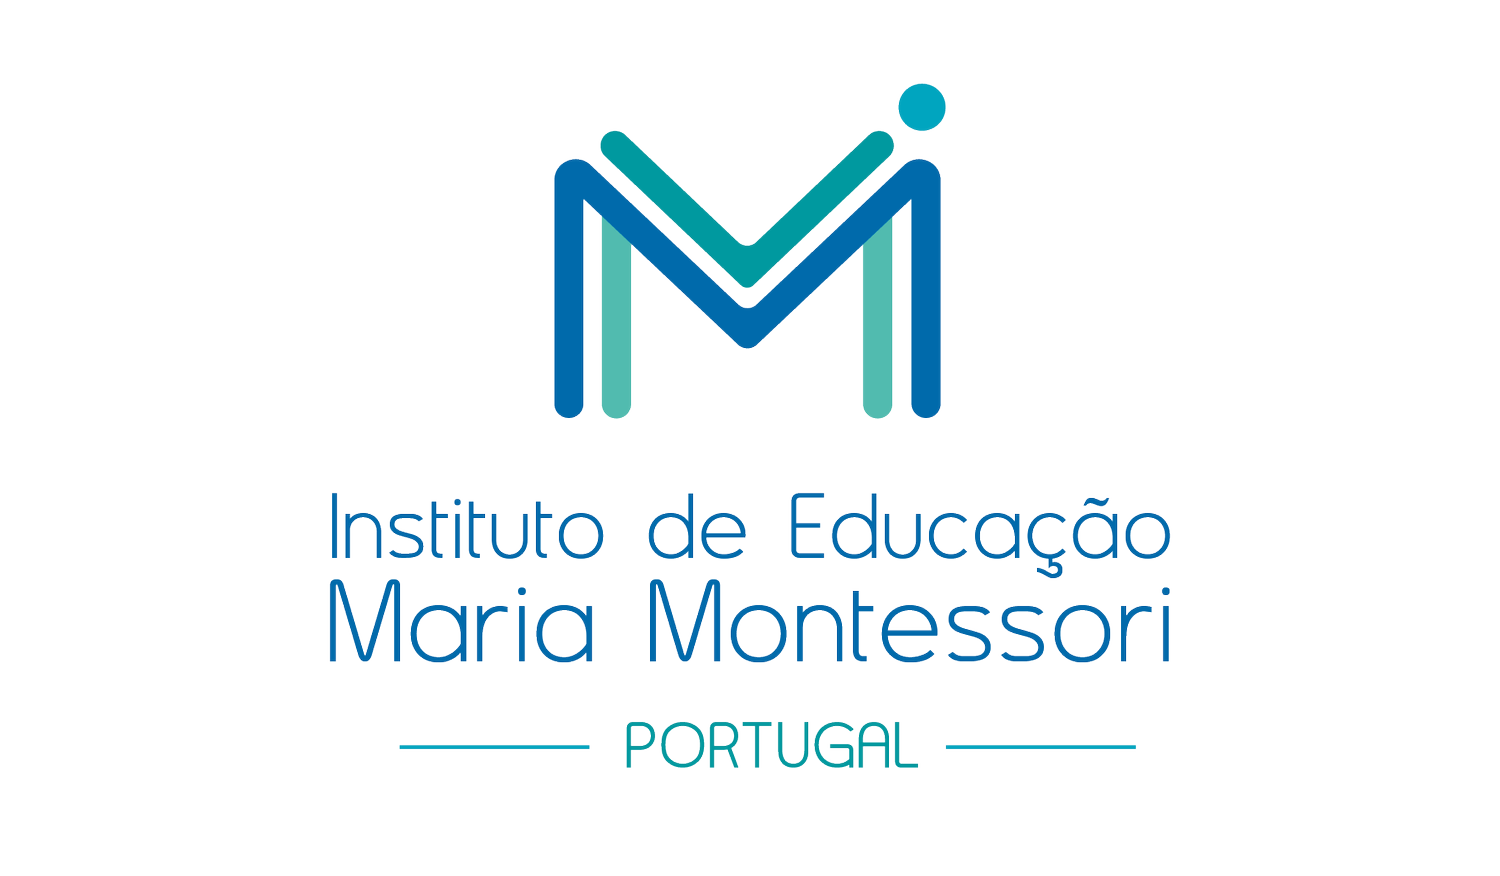 Instituto de Educação Maria Montessori Portugal